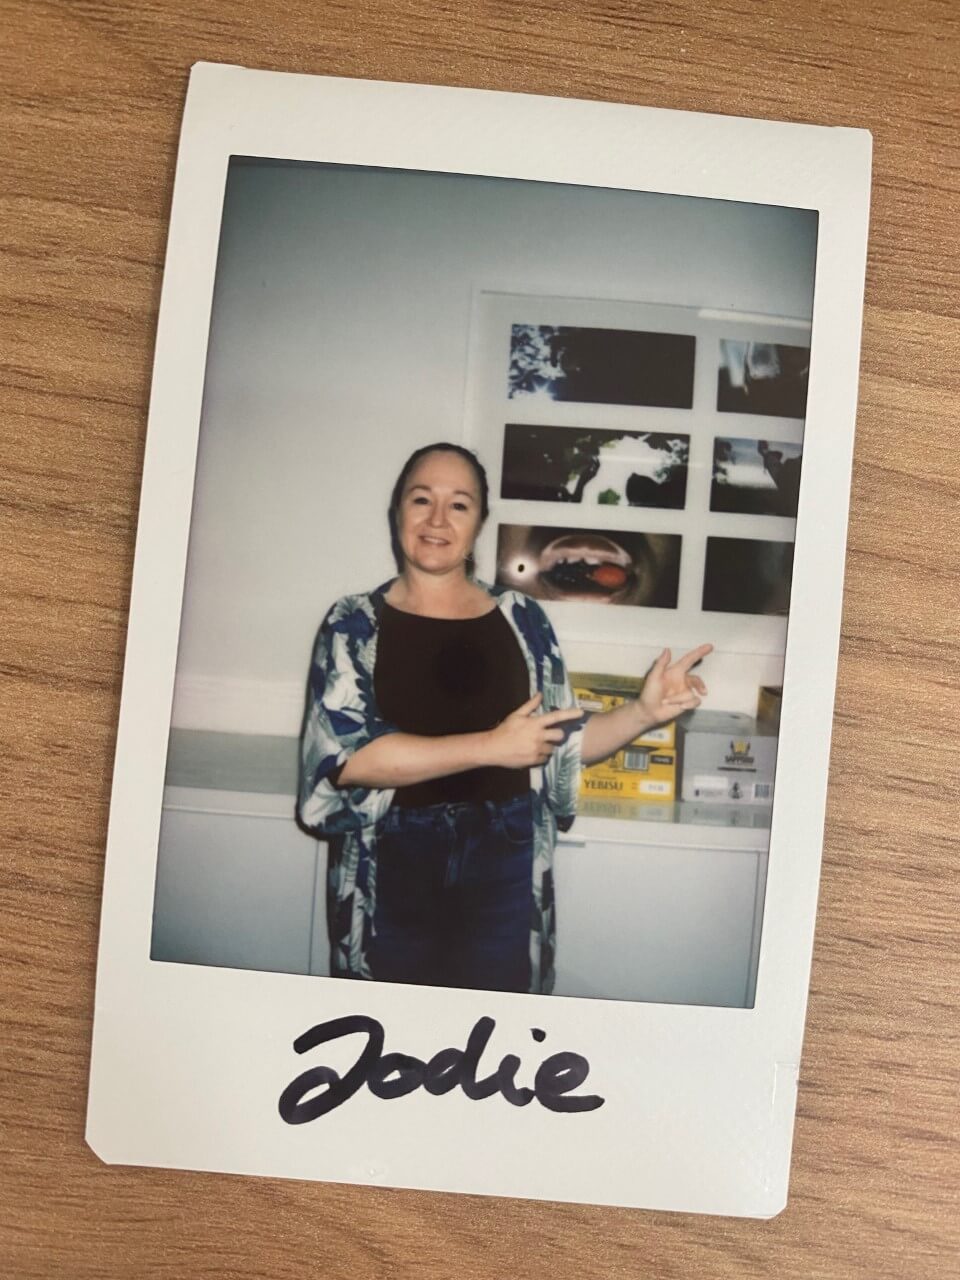 Jodie Palmer - Staff polaroid